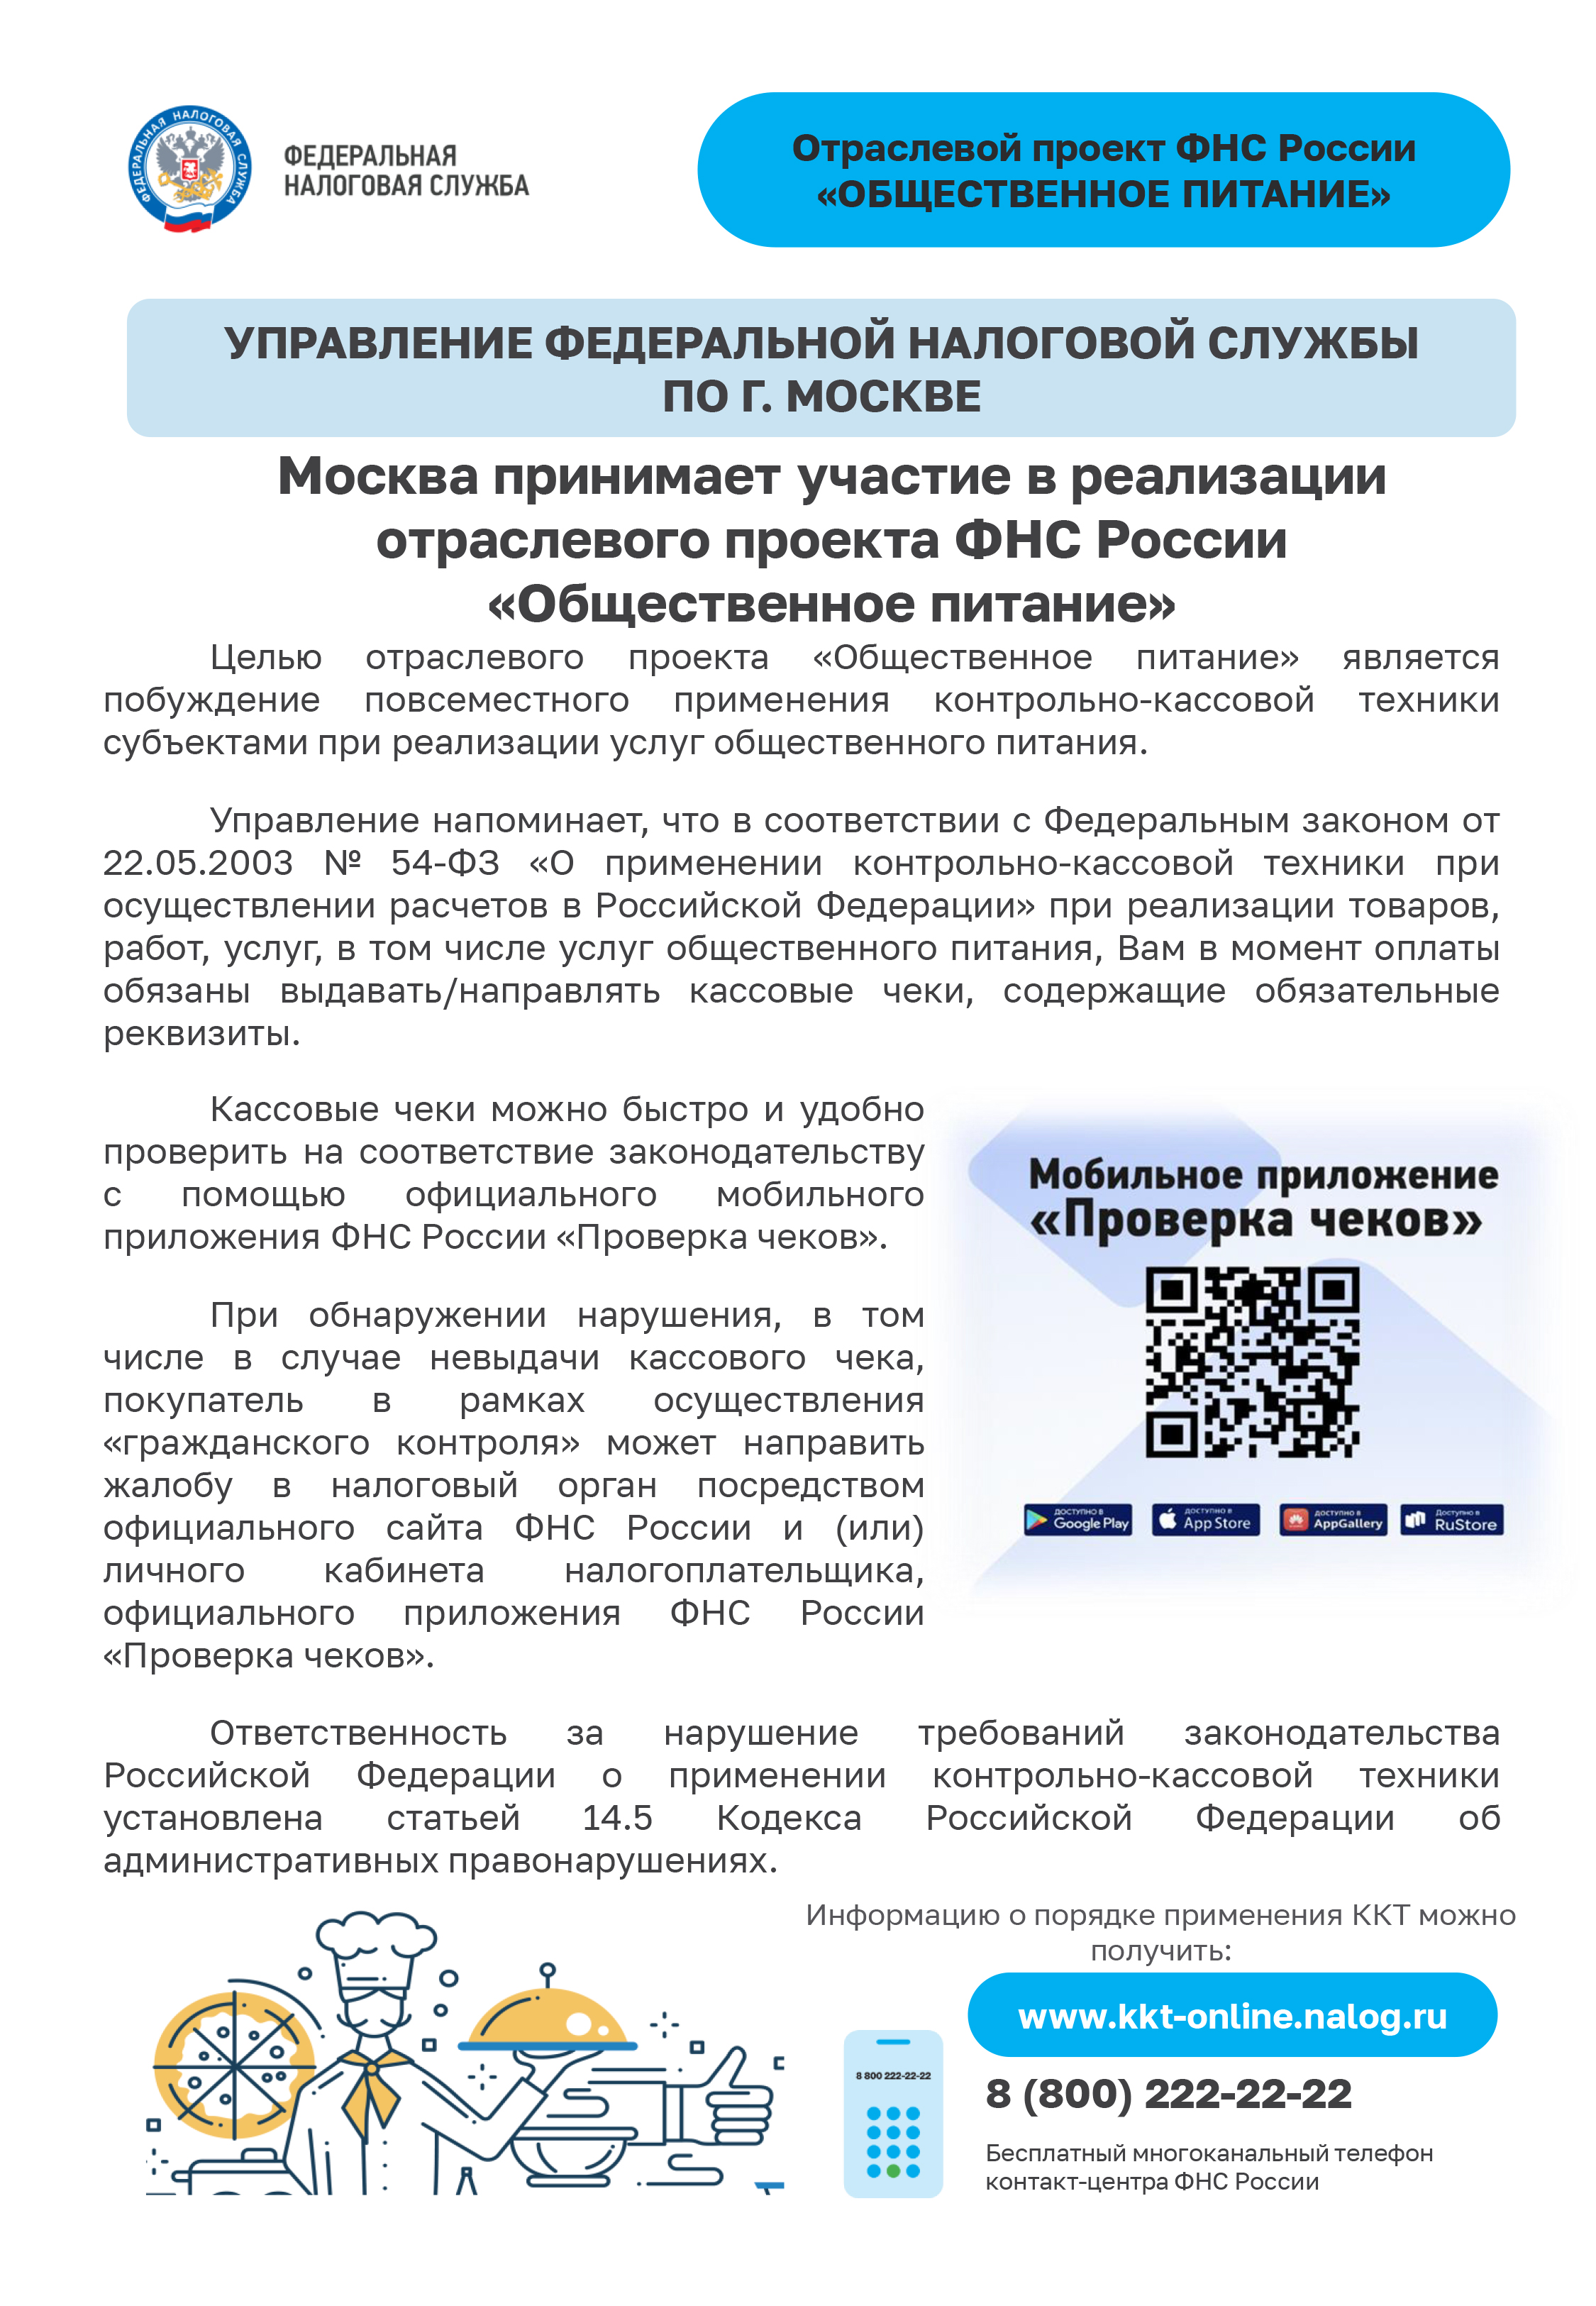 Москва принимает участие в реализации отраслевого проекта ФНС России «Общественное питание»